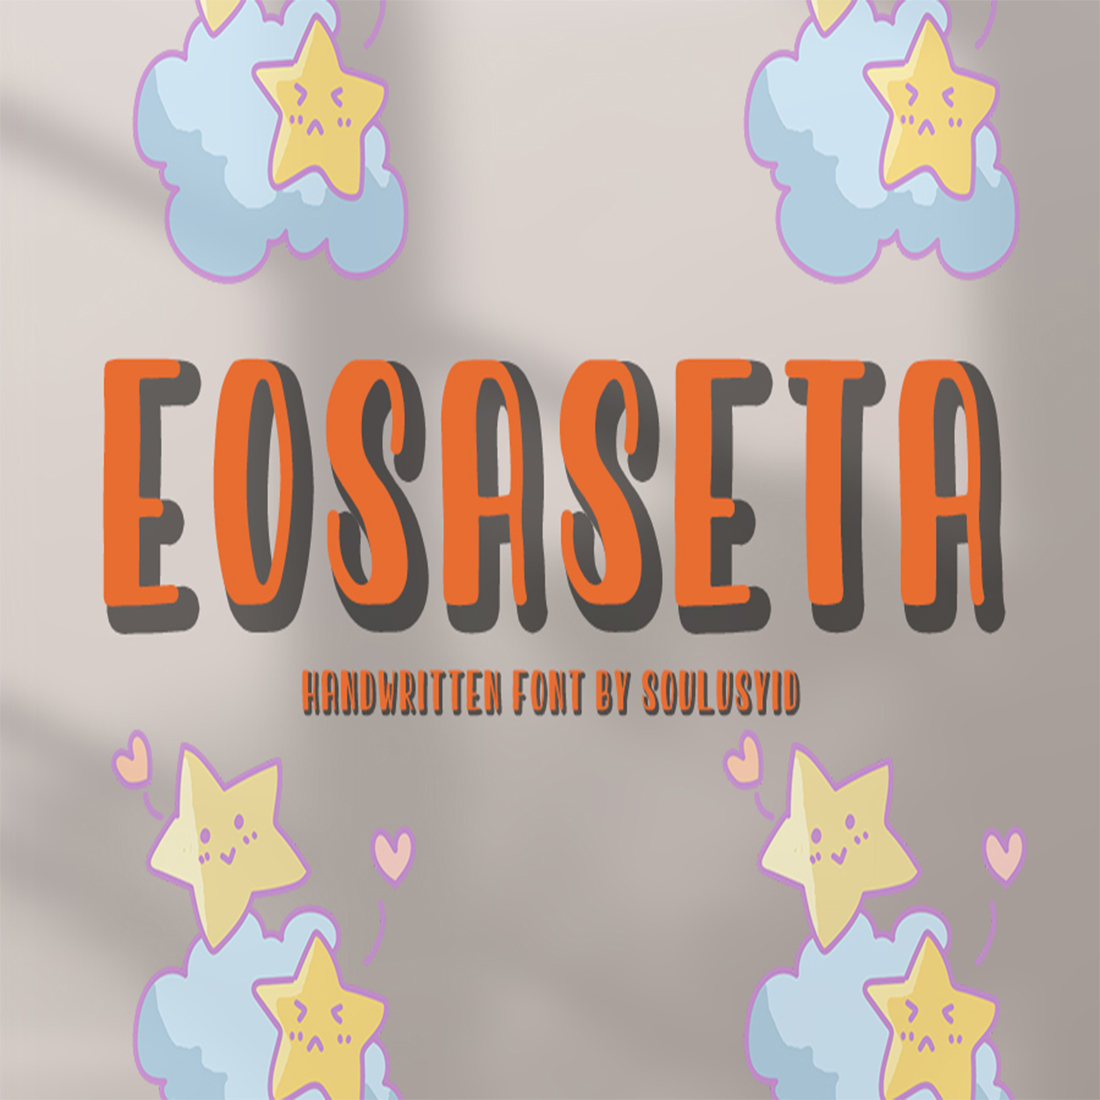 Eosaseta cover image.